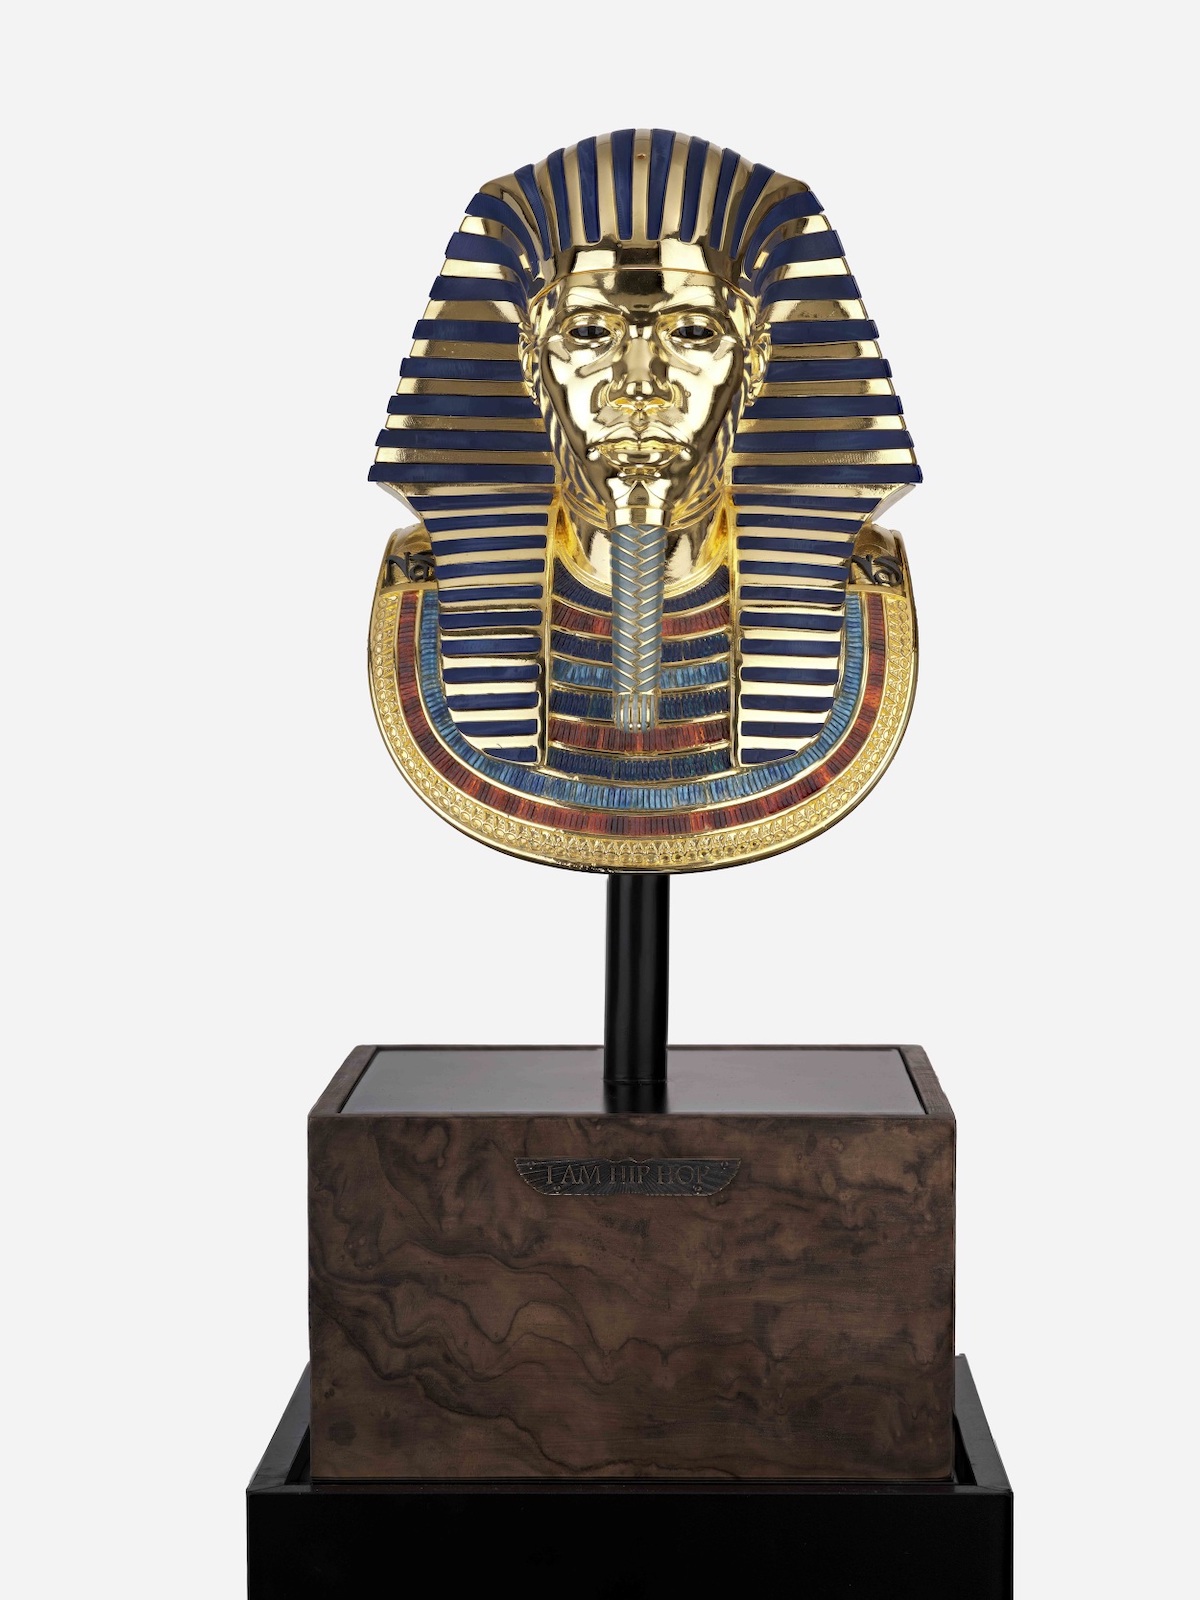 يتحدث الفنانون وراء “الملك الأسود توت” الذي أثار غضب النقاد المصريين